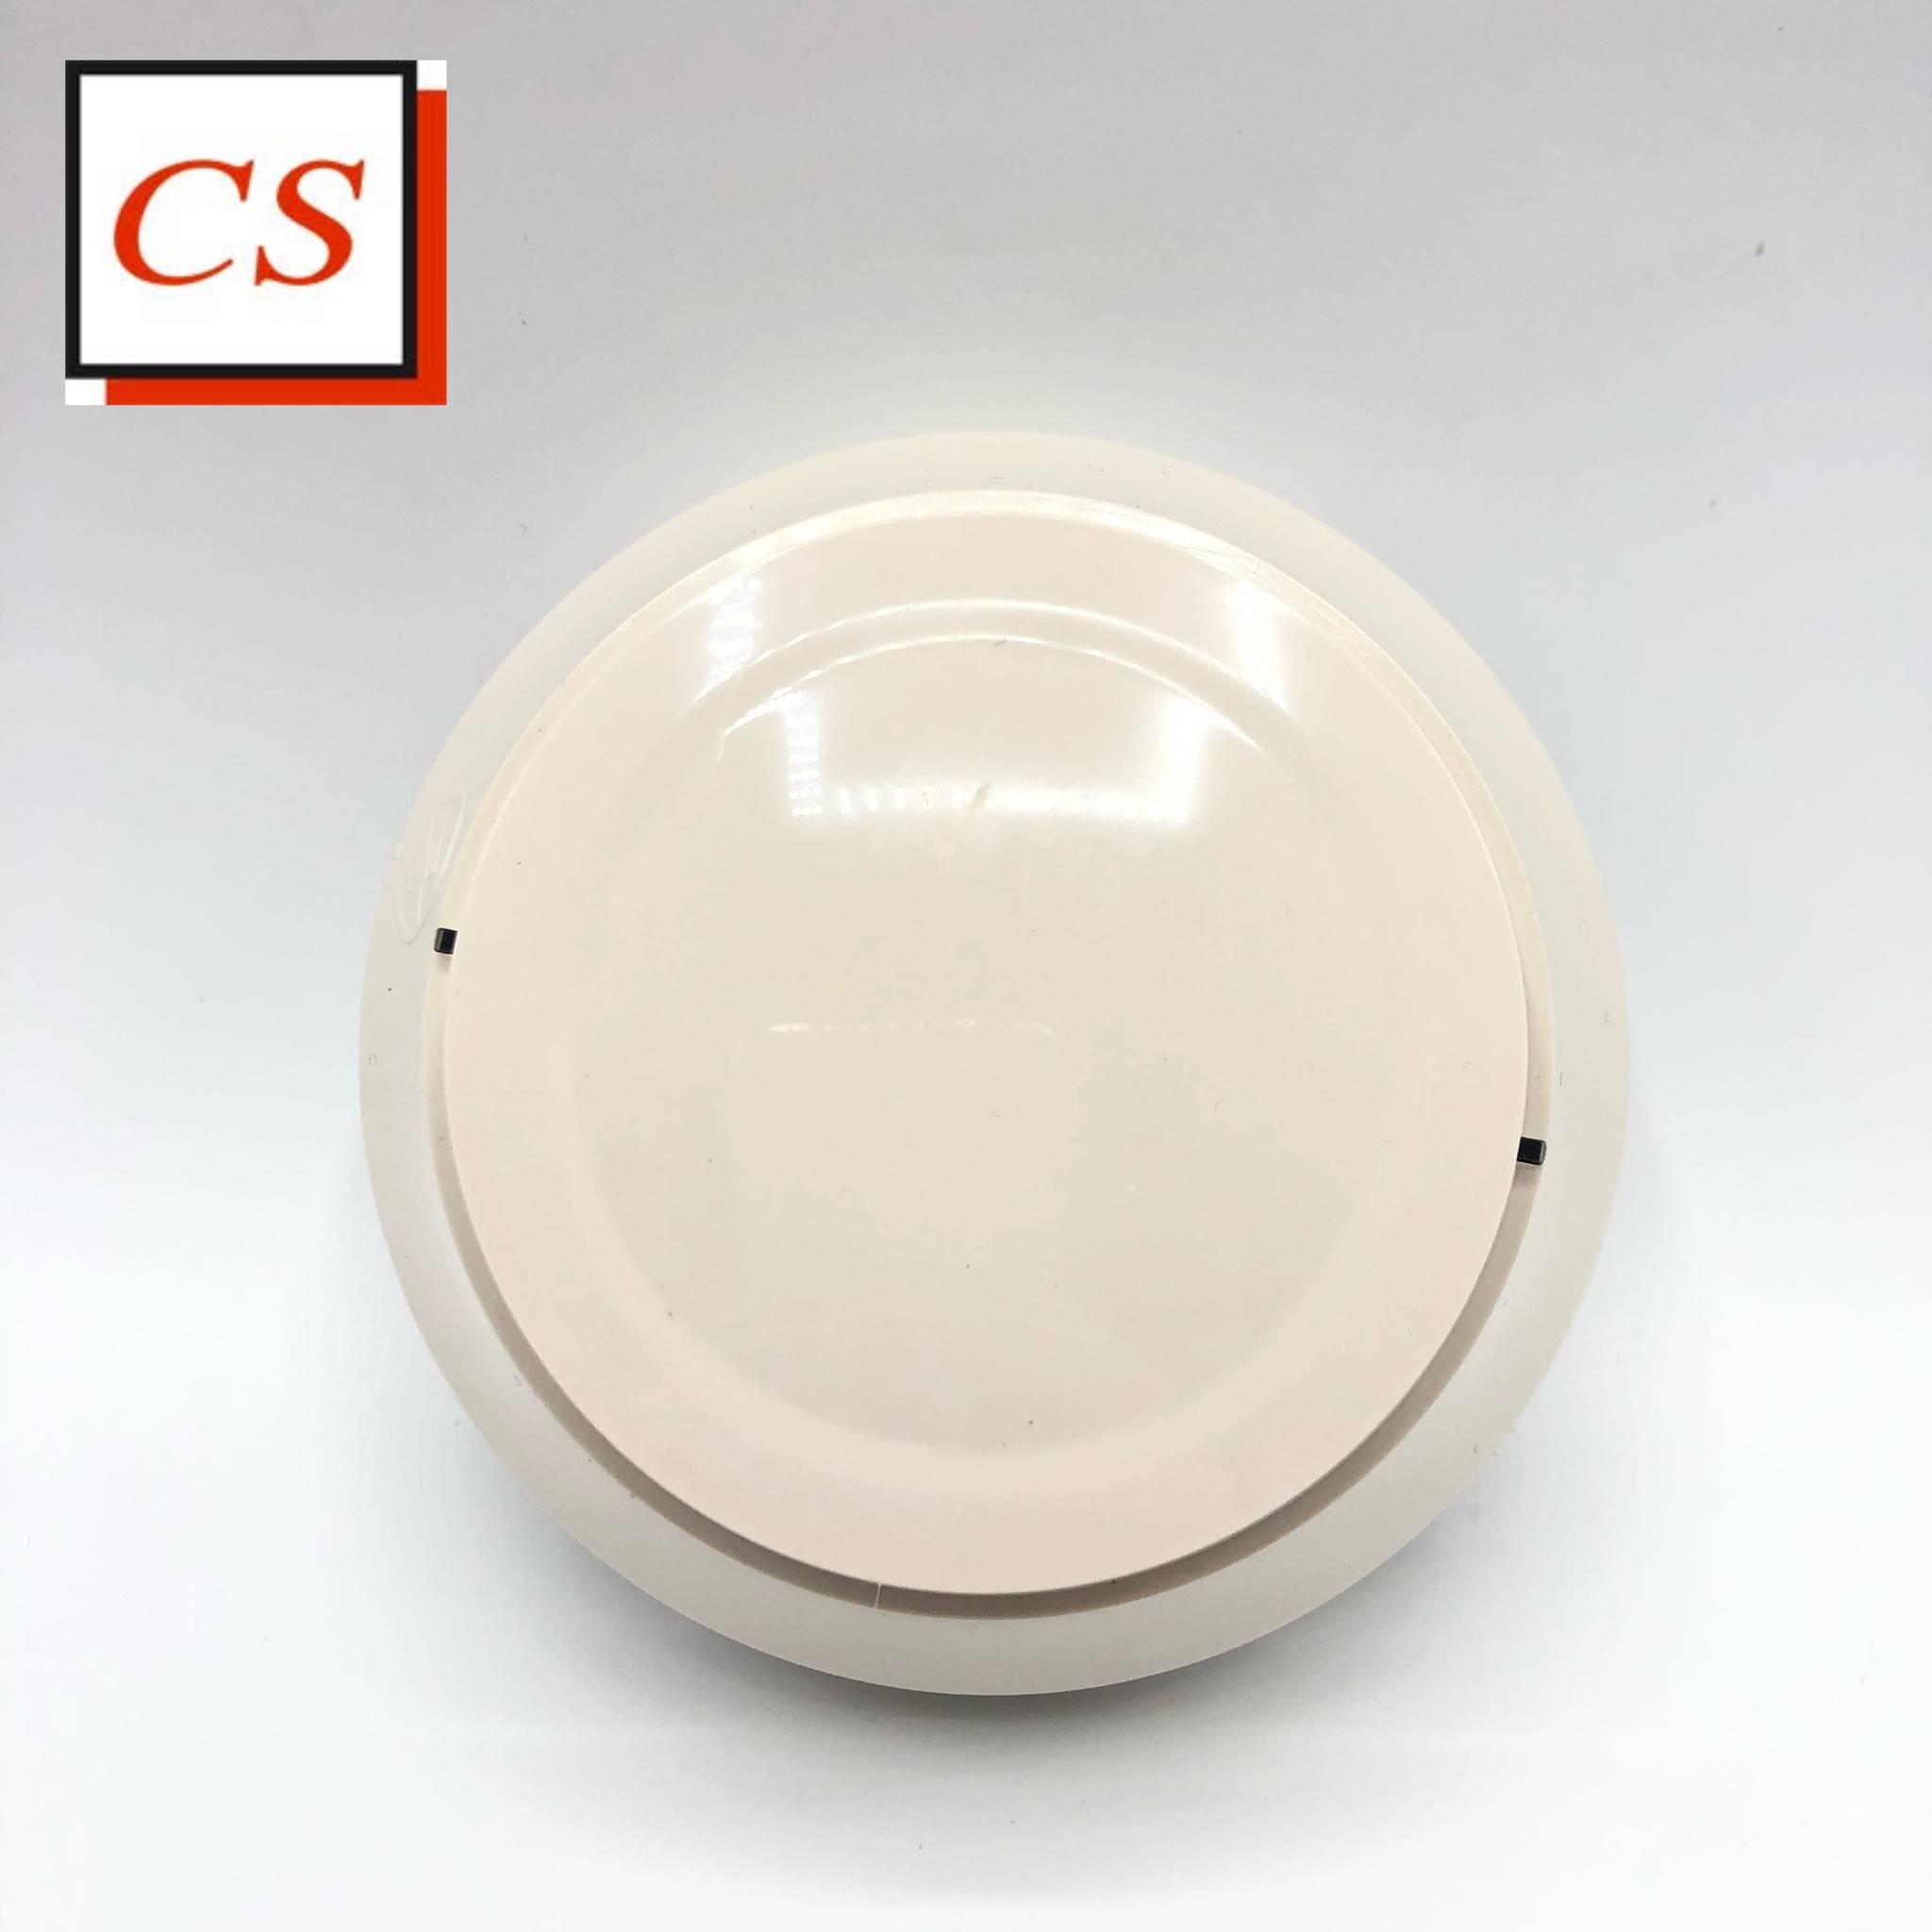 Addressable Smoke Detector อุปกรณ์ตรวจจับควัน ยี่ห้อ Notifier Model: FSP-951